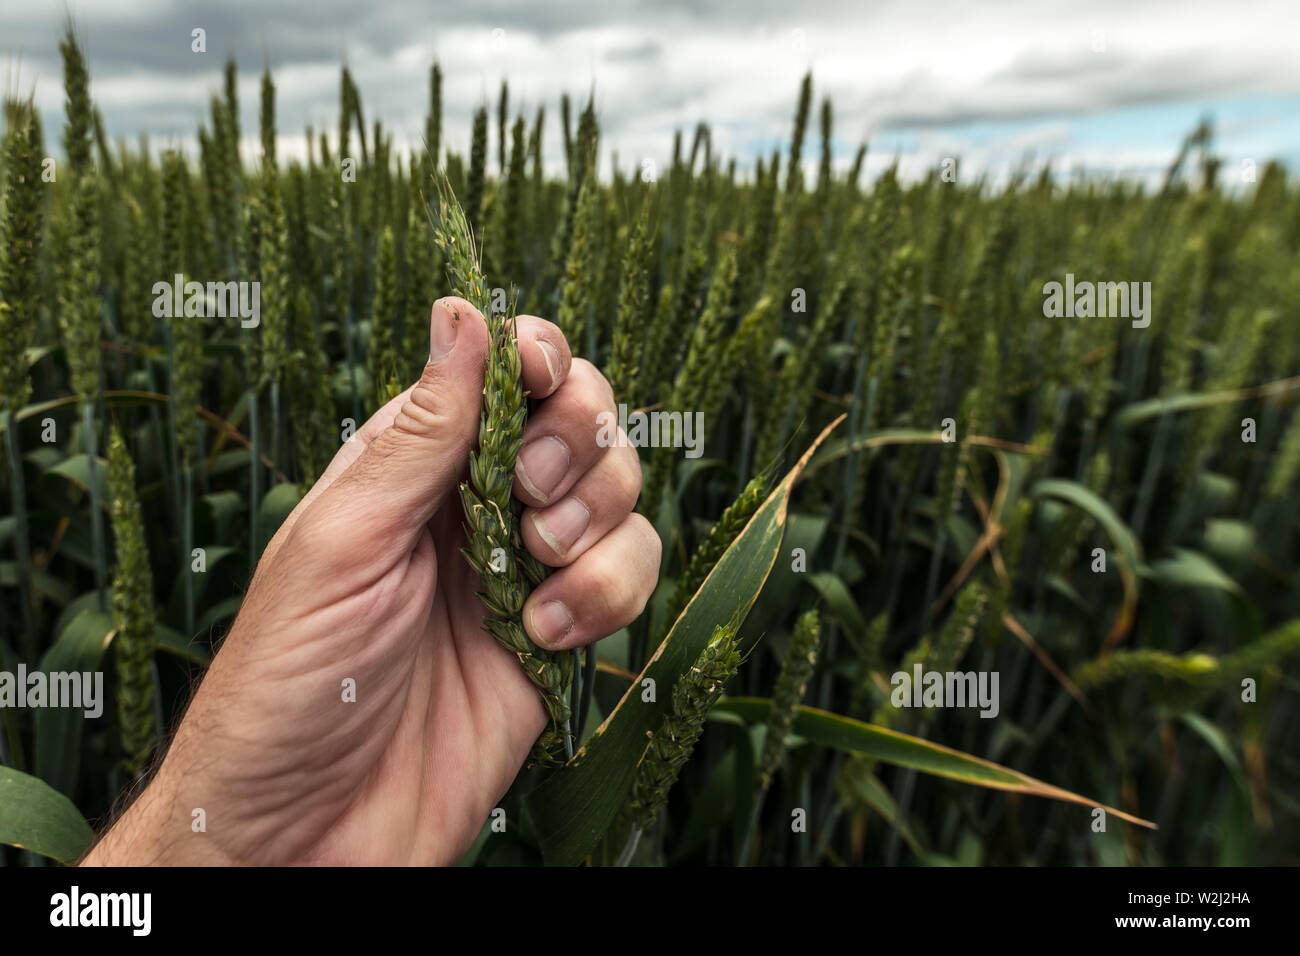 Agricultor examinar espiga de trigo, cerca del lado macho Foto de stock